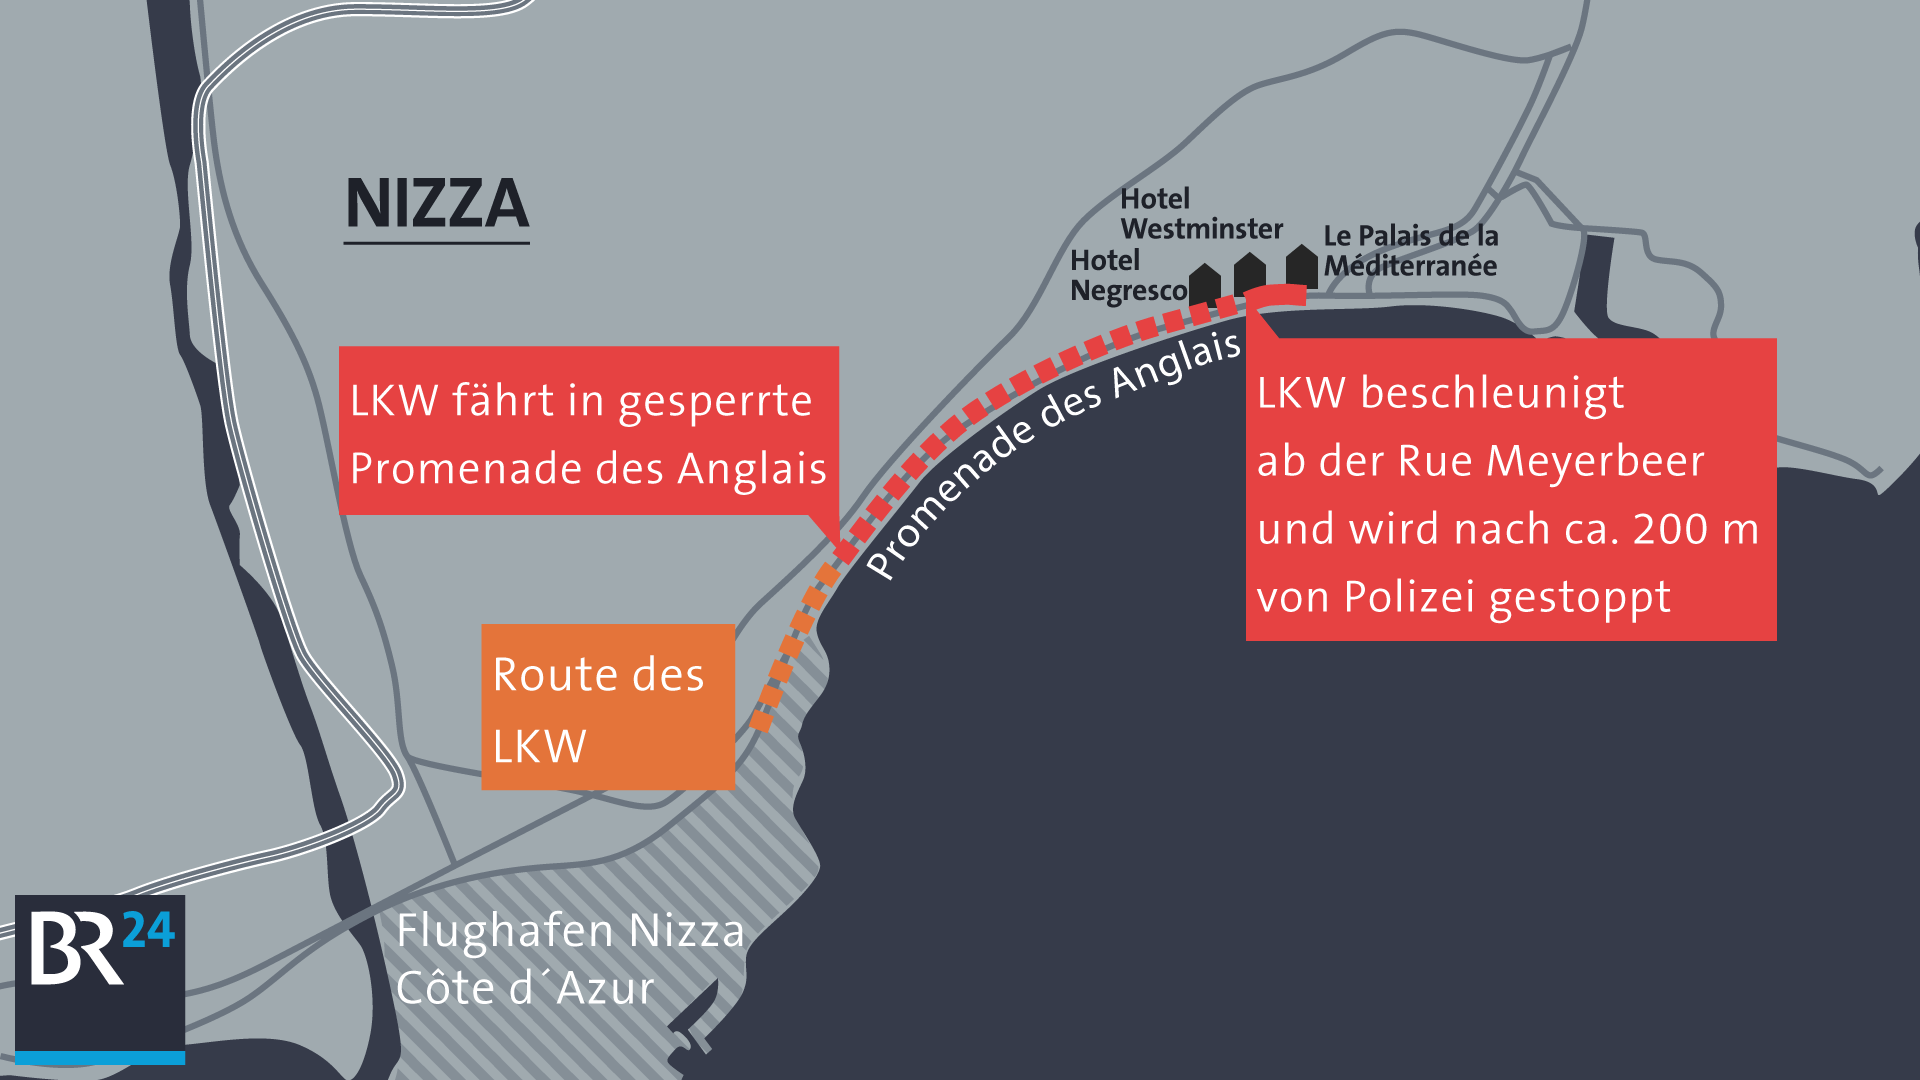 Karte von Nizza mit der Fahrroute des Lkw-Fahrers | Bild: BR; Montage: BR